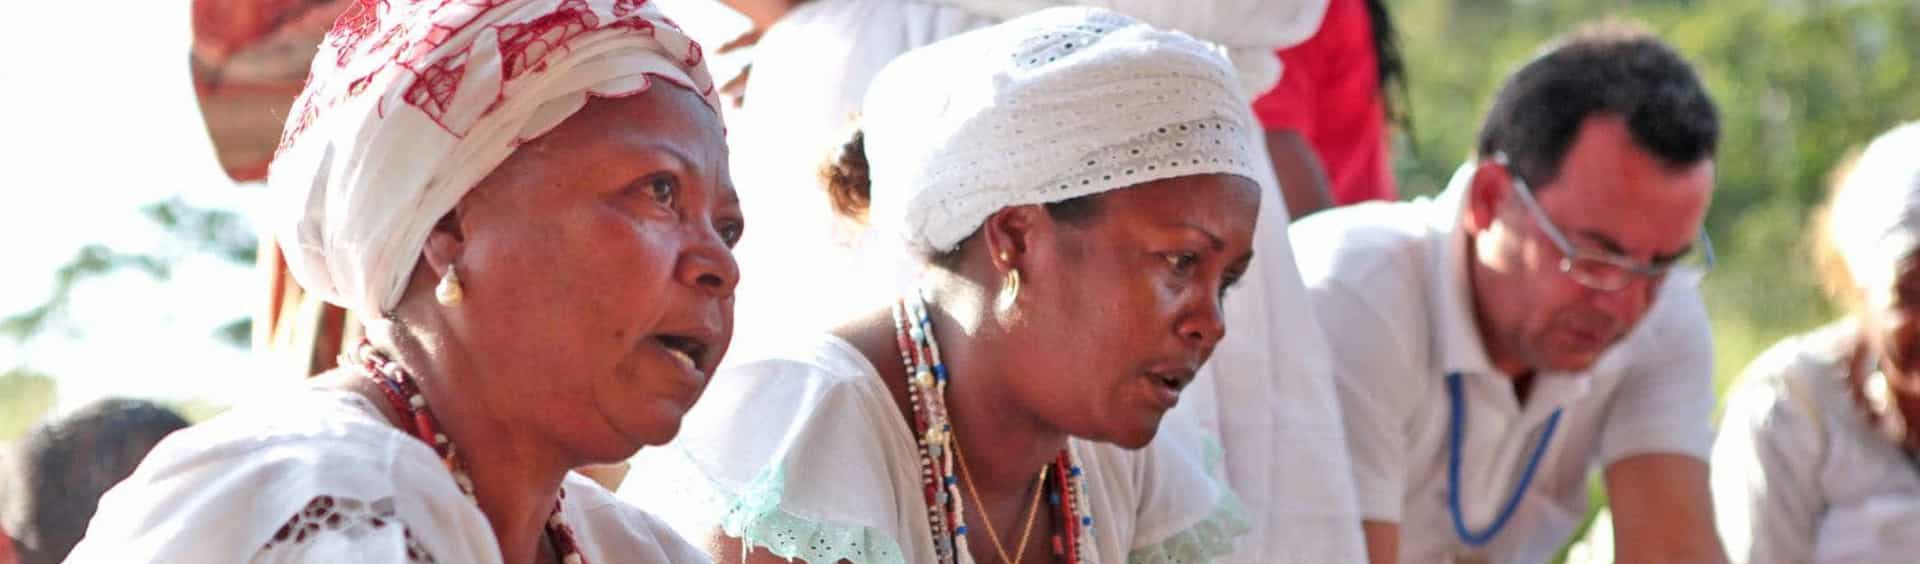 Em defesa da vida, povos de terreiro lançam manifesto: “Fora Bolsonaro e Mourão”